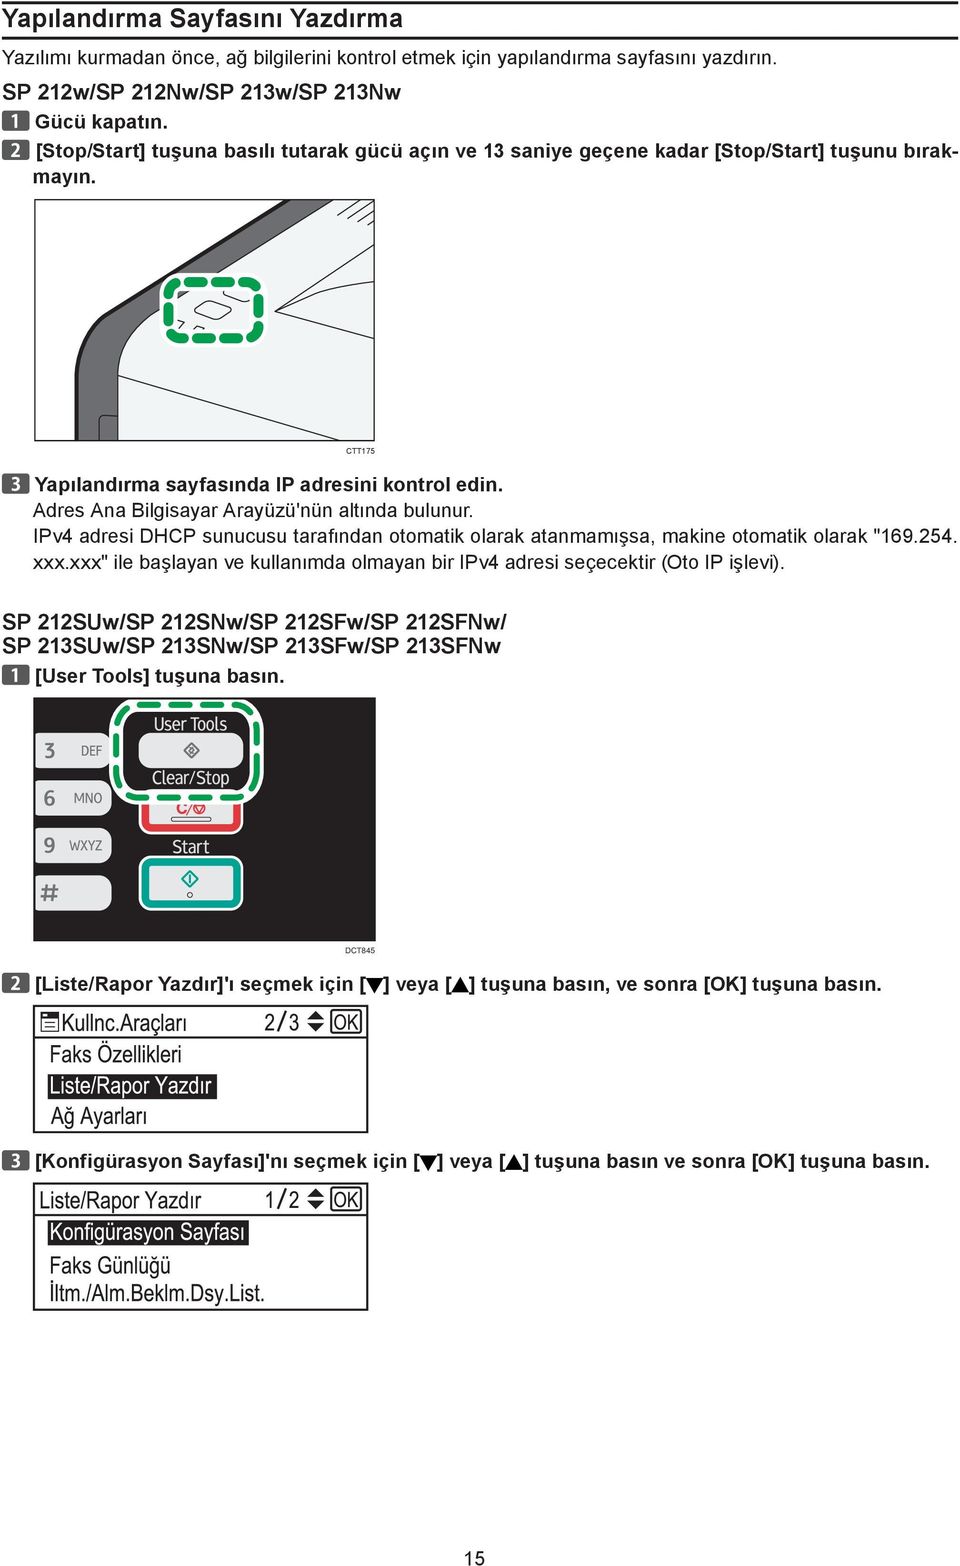 Adres Ana Bilgisayar Arayüzü'nün altında bulunur. IPv4 adresi DHCP sunucusu tarafından otomatik olarak atanmamışsa, makine otomatik olarak "169.254. xxx.